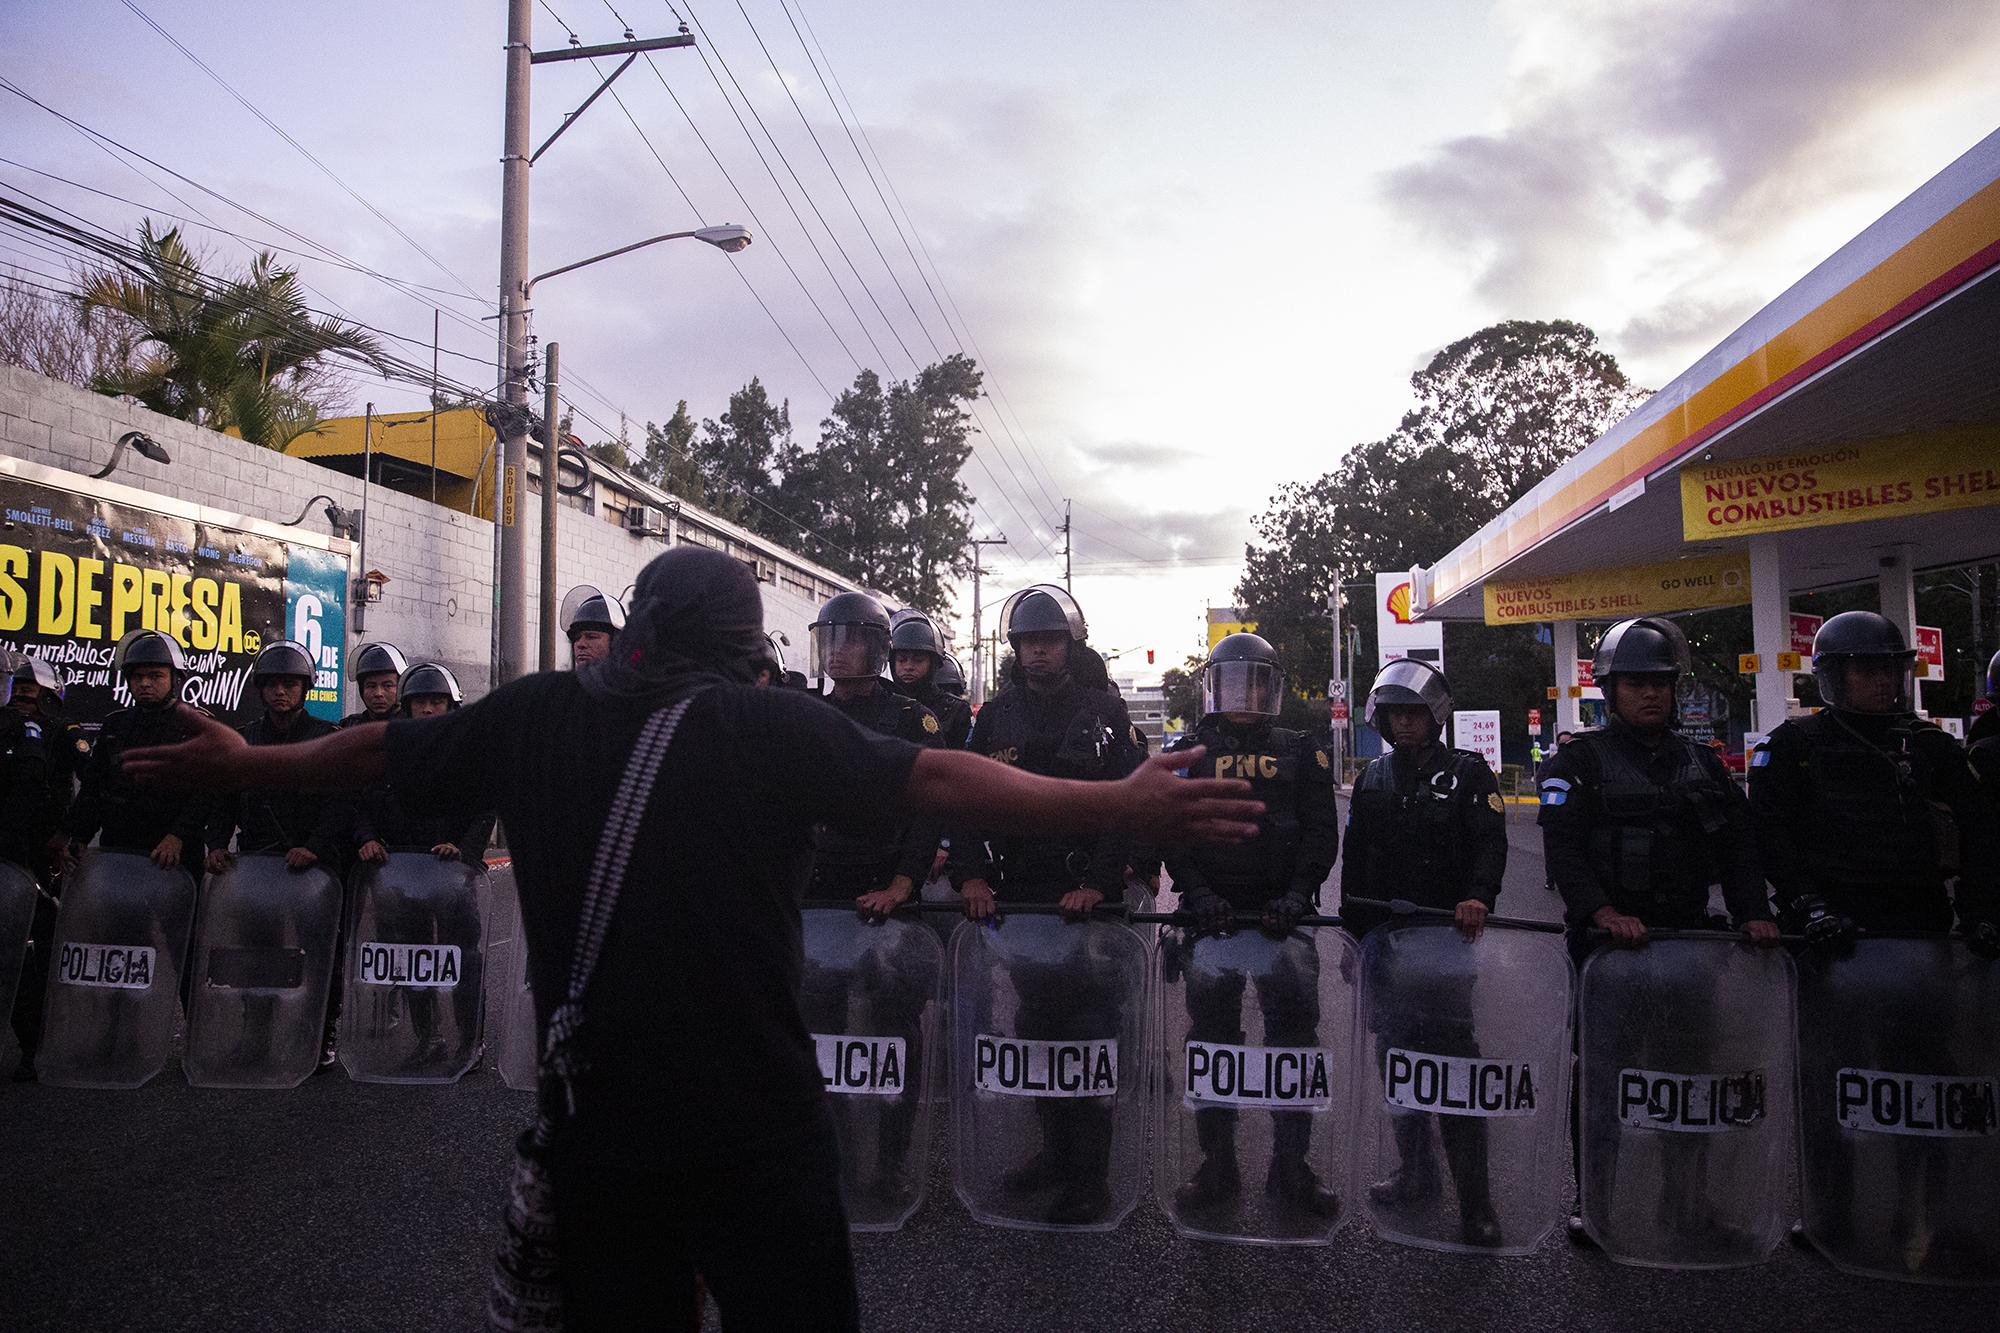 La Policía Nacional Civil intentó movilizar a los manifestantes y a los autobuses que mantenían bloquedo el acceso al Parlacen en la 12 avenida. Algunos de los universitarios pedían a los policías, 